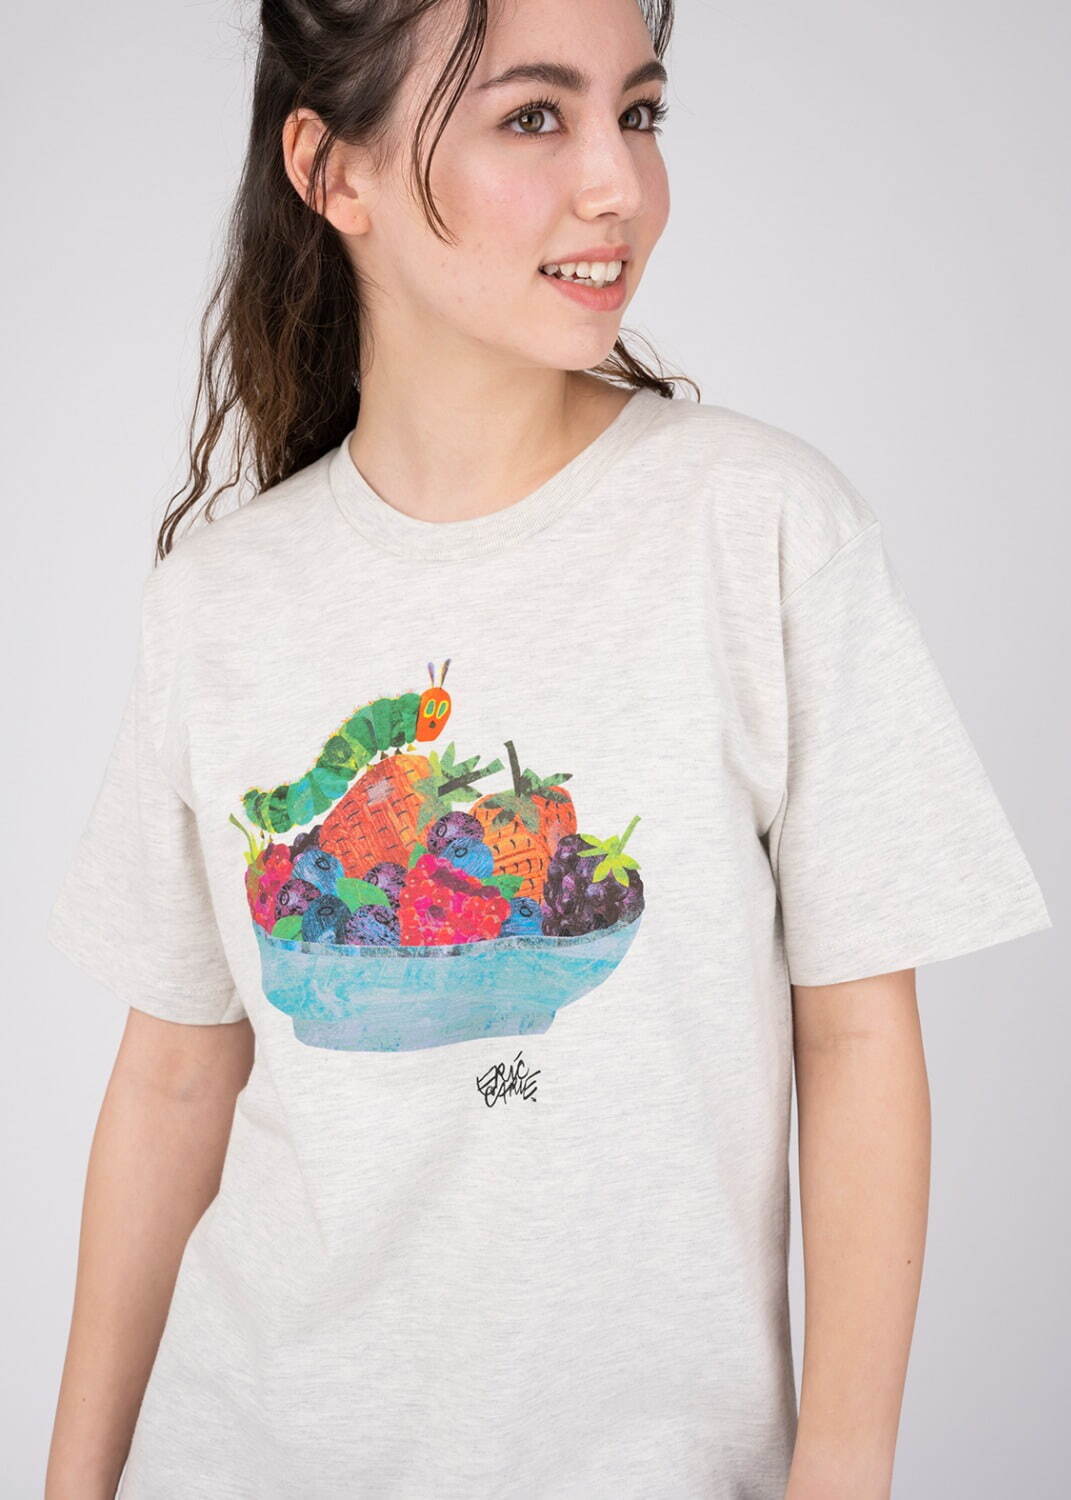 Tシャツ「ベリーズ」 2,500円